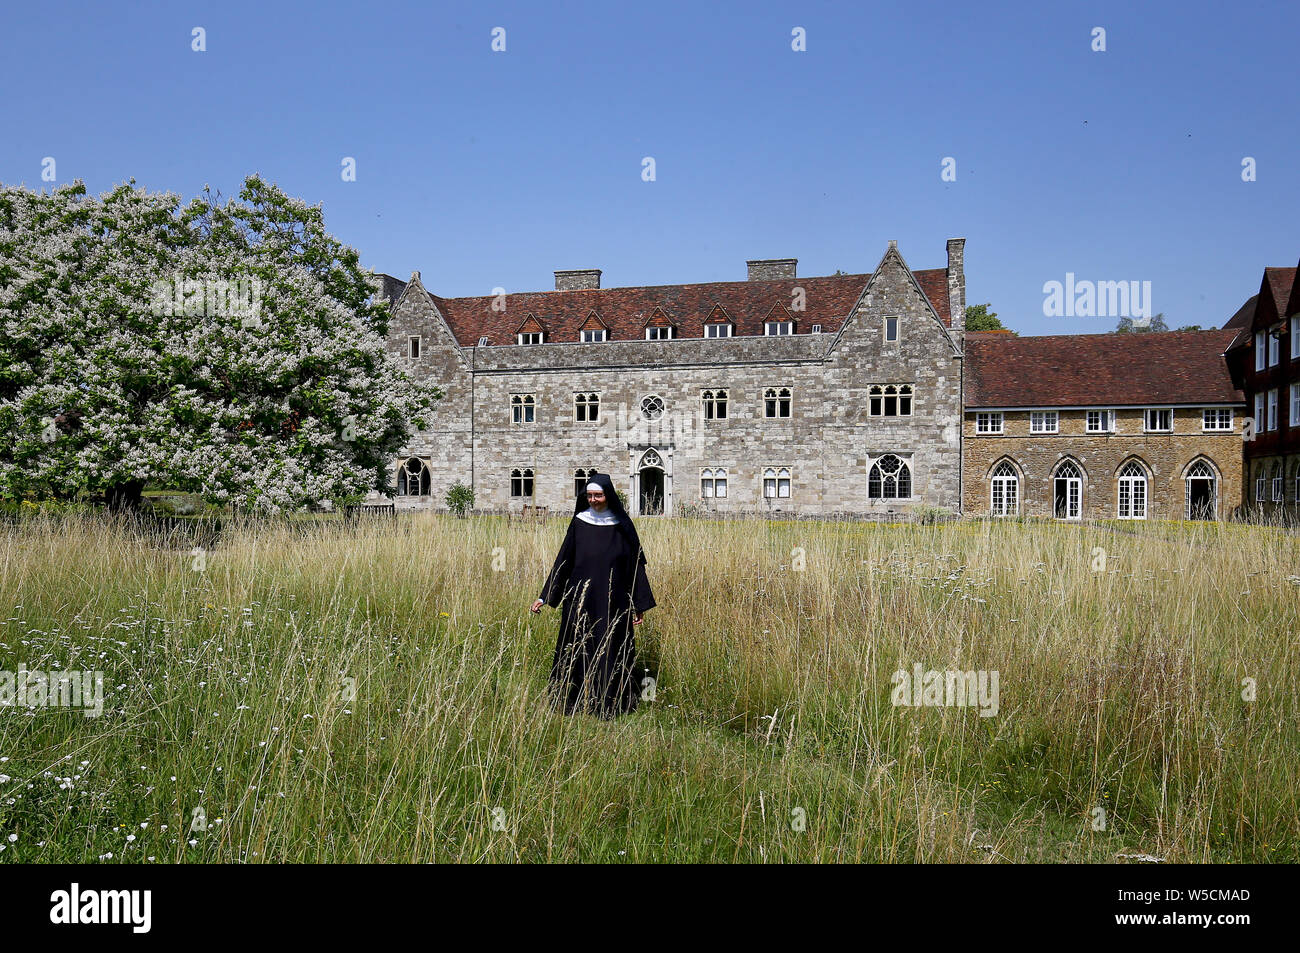 Mutter Mary David genießt den wilden Garten der St. Mary's Abbey, auch bekannt als Malling Abbey, in West Malling, Kent. Die Lebensweise der Gemeinschaft der Nonnen ist durch Vorschläge zum Bau einer Wohnsiedlung neben ihrem abgeschiedenen alten Haus bedroht, haben Aktivisten behauptet. Stockfoto